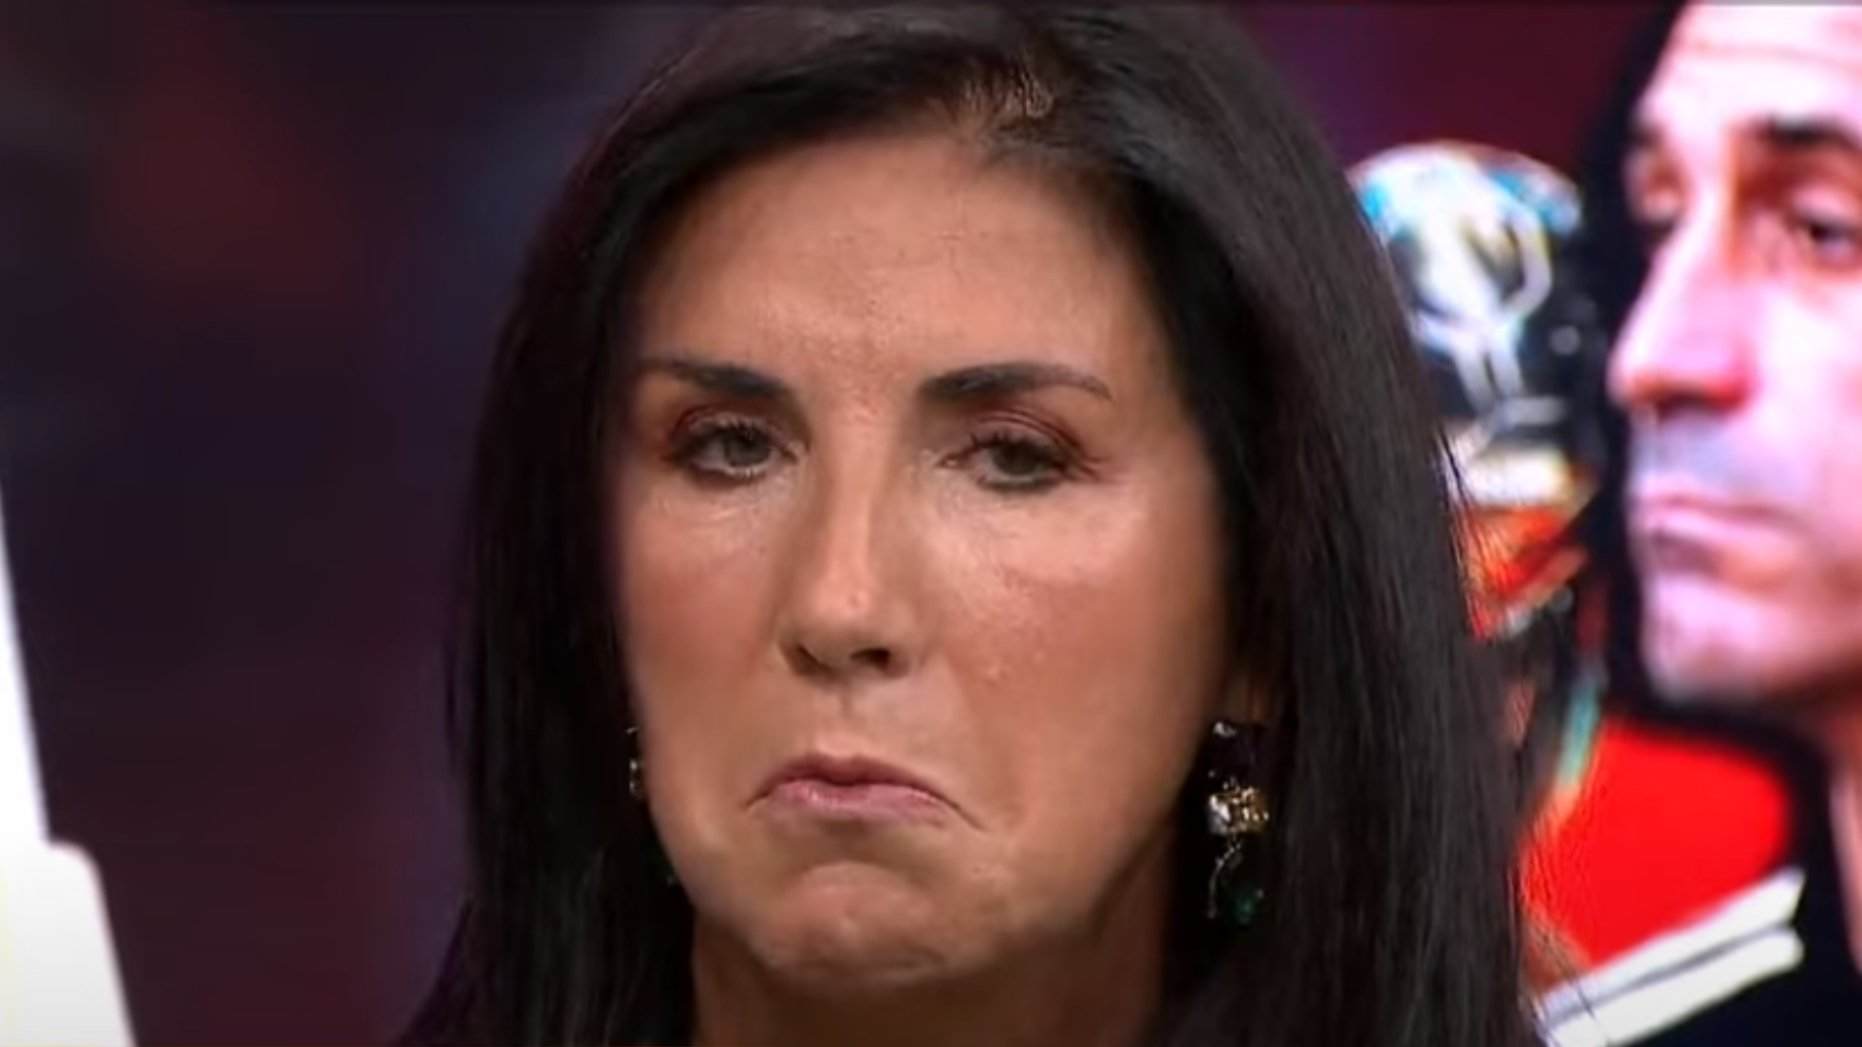 Cristina Cubero asquea a la red hablando sobre el beso de Rubiales: "vergüenza ajena"